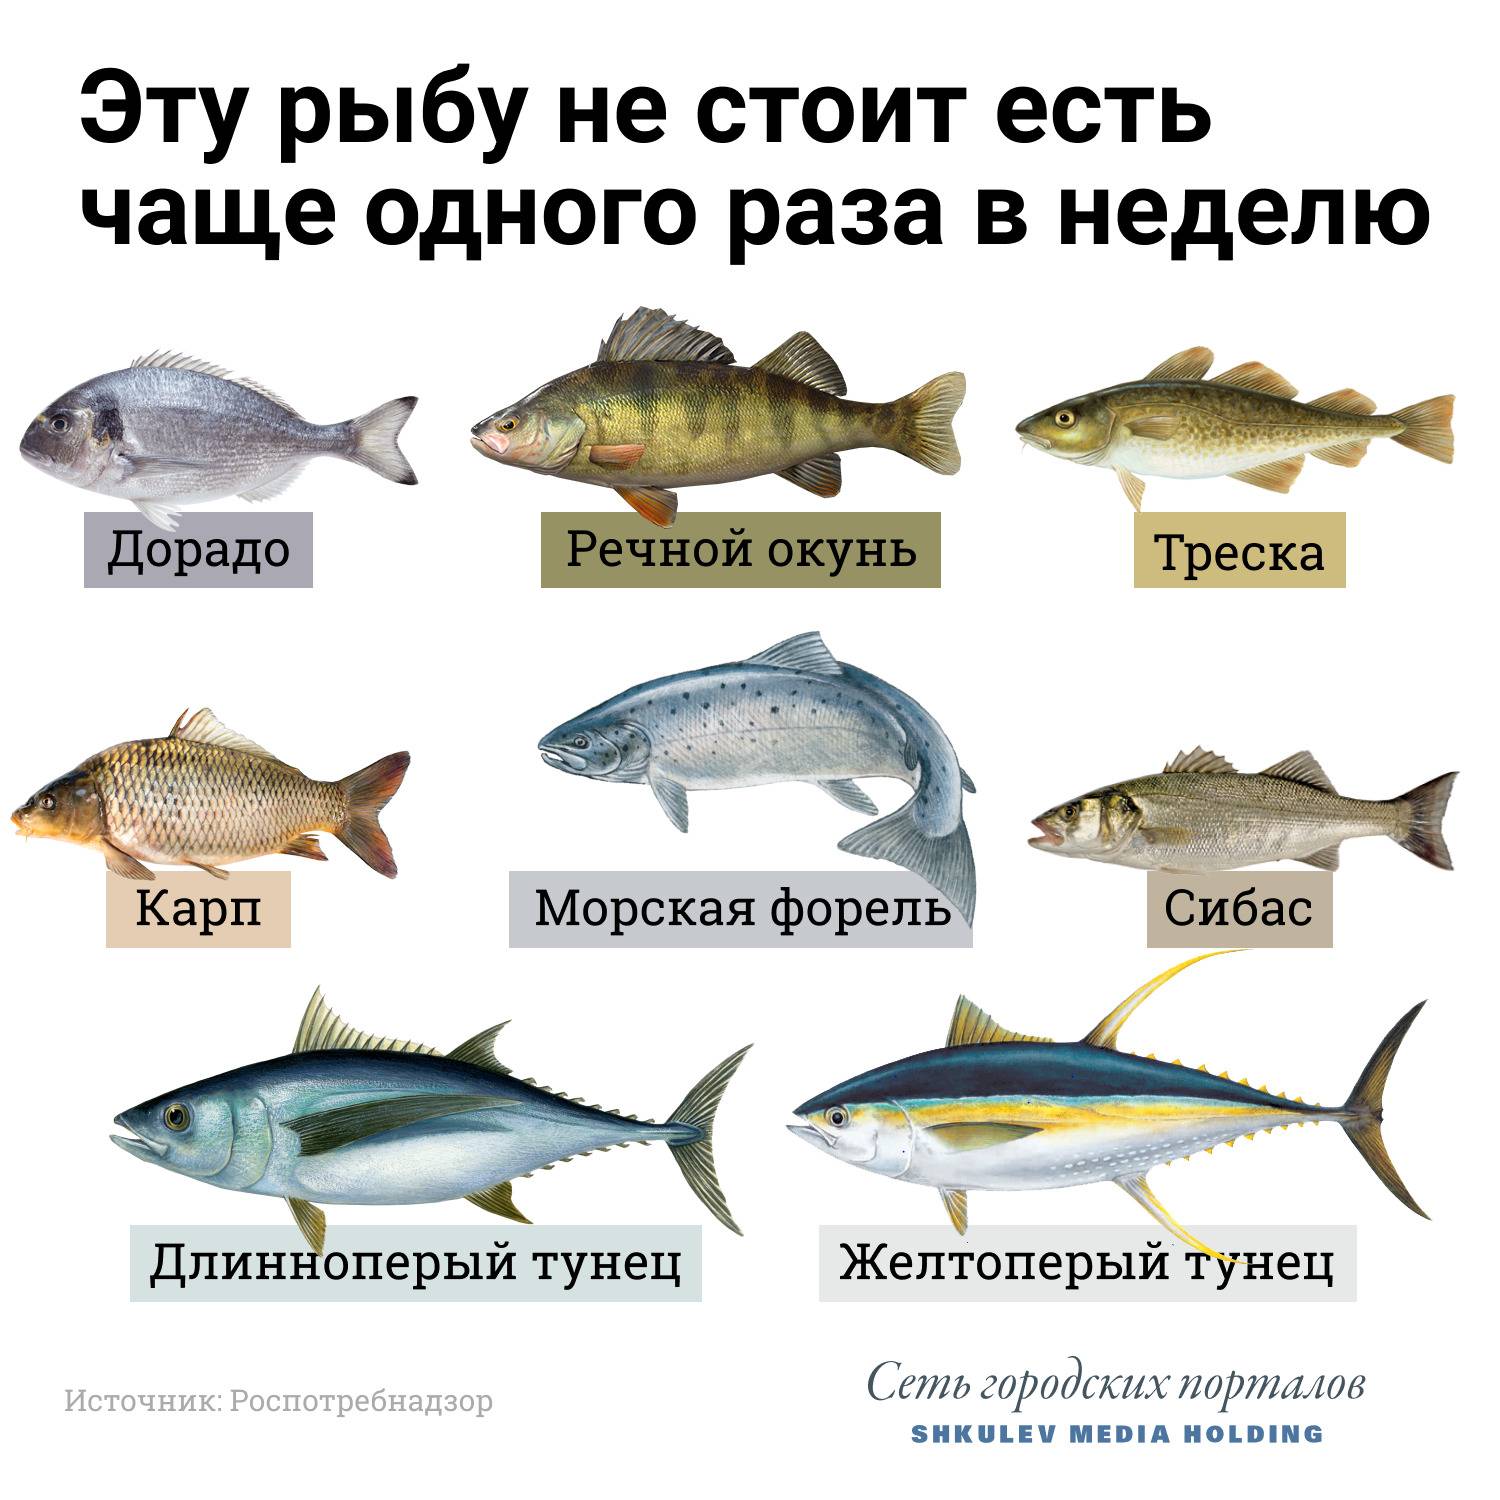 Паразиты в рыбе: опасные для человека, как они выглядят, описание